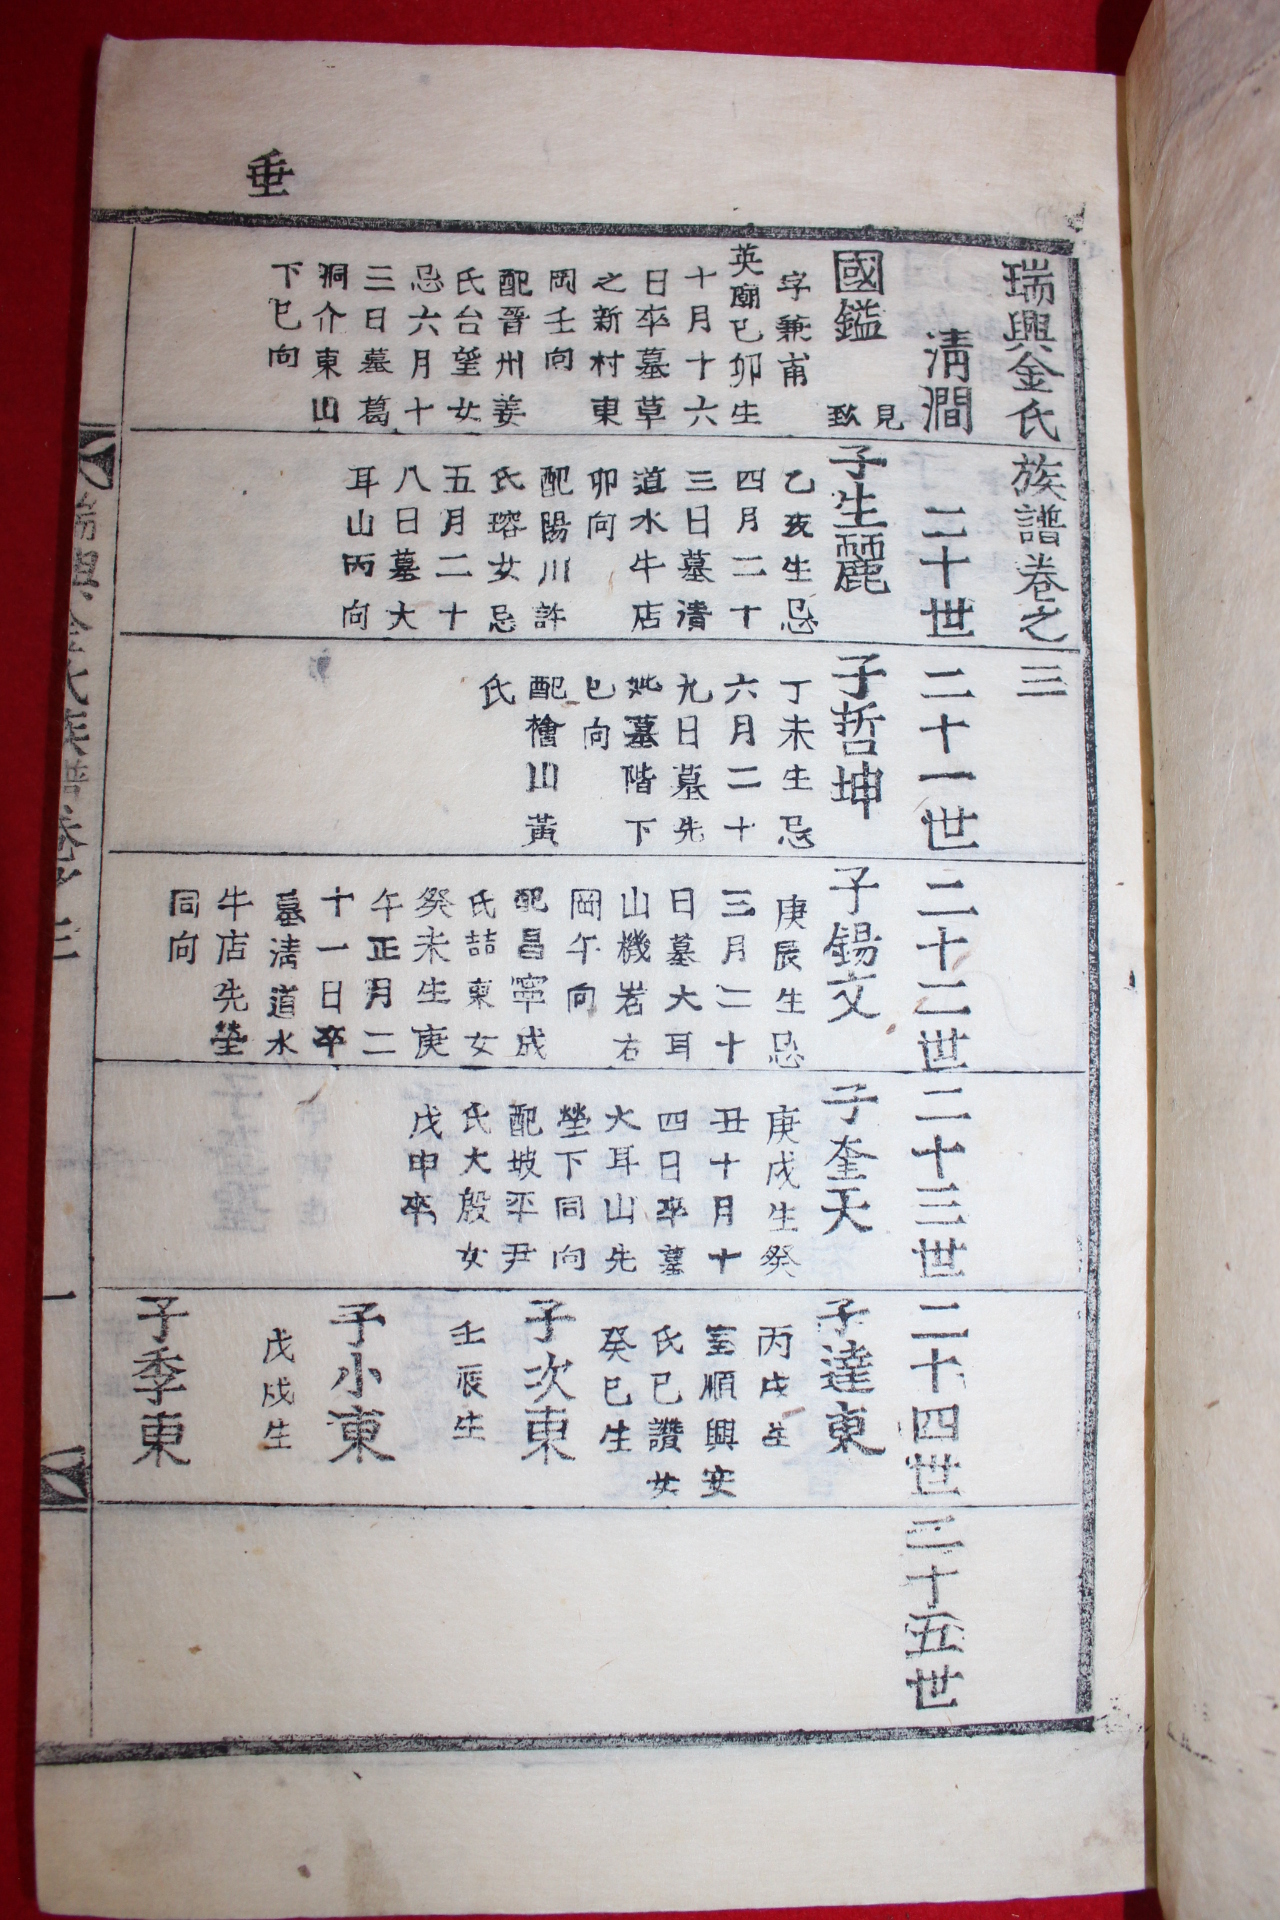 1916년 목활자본 서흥김씨족보(瑞興金氏族譜) 3권3책완질